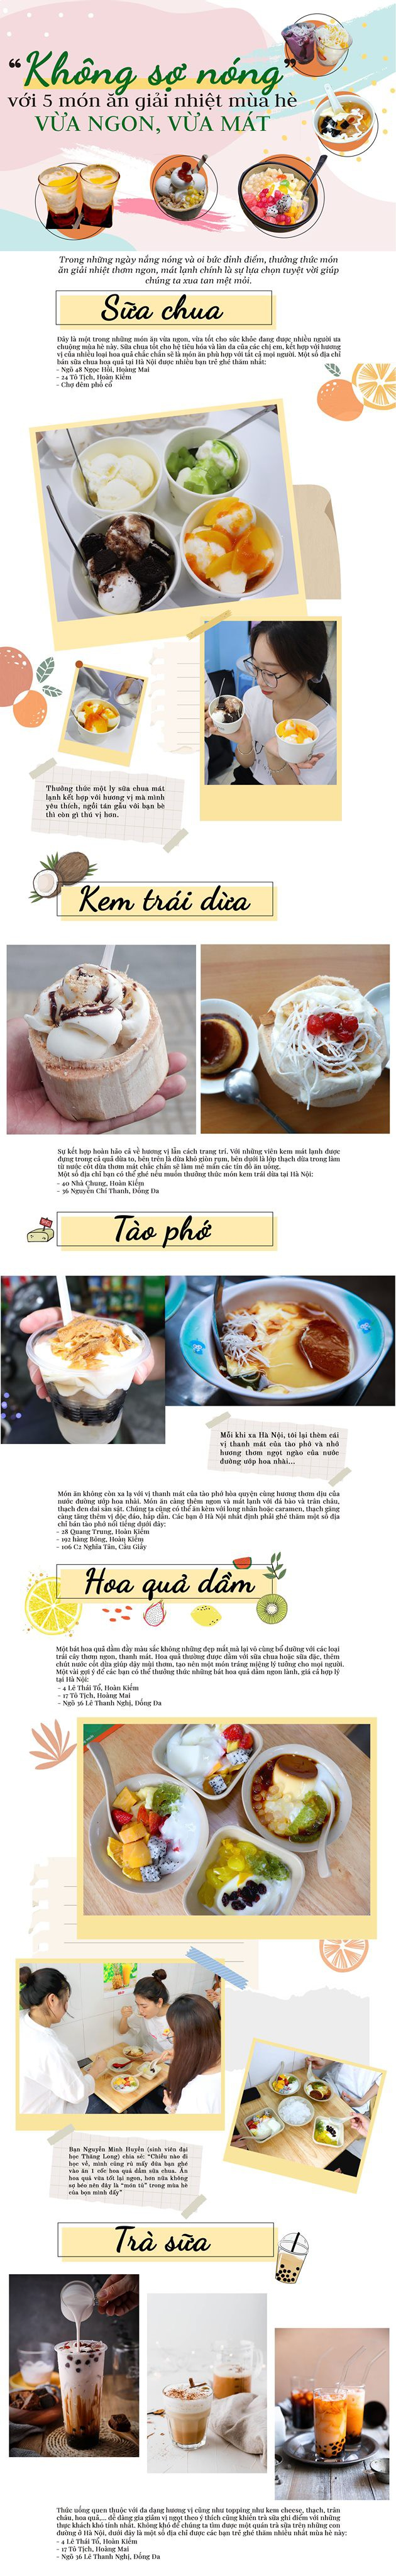 Không sợ nóng” với 5 món ăn giải nhiệt mùa hè - Báo Thái Bình điện tử